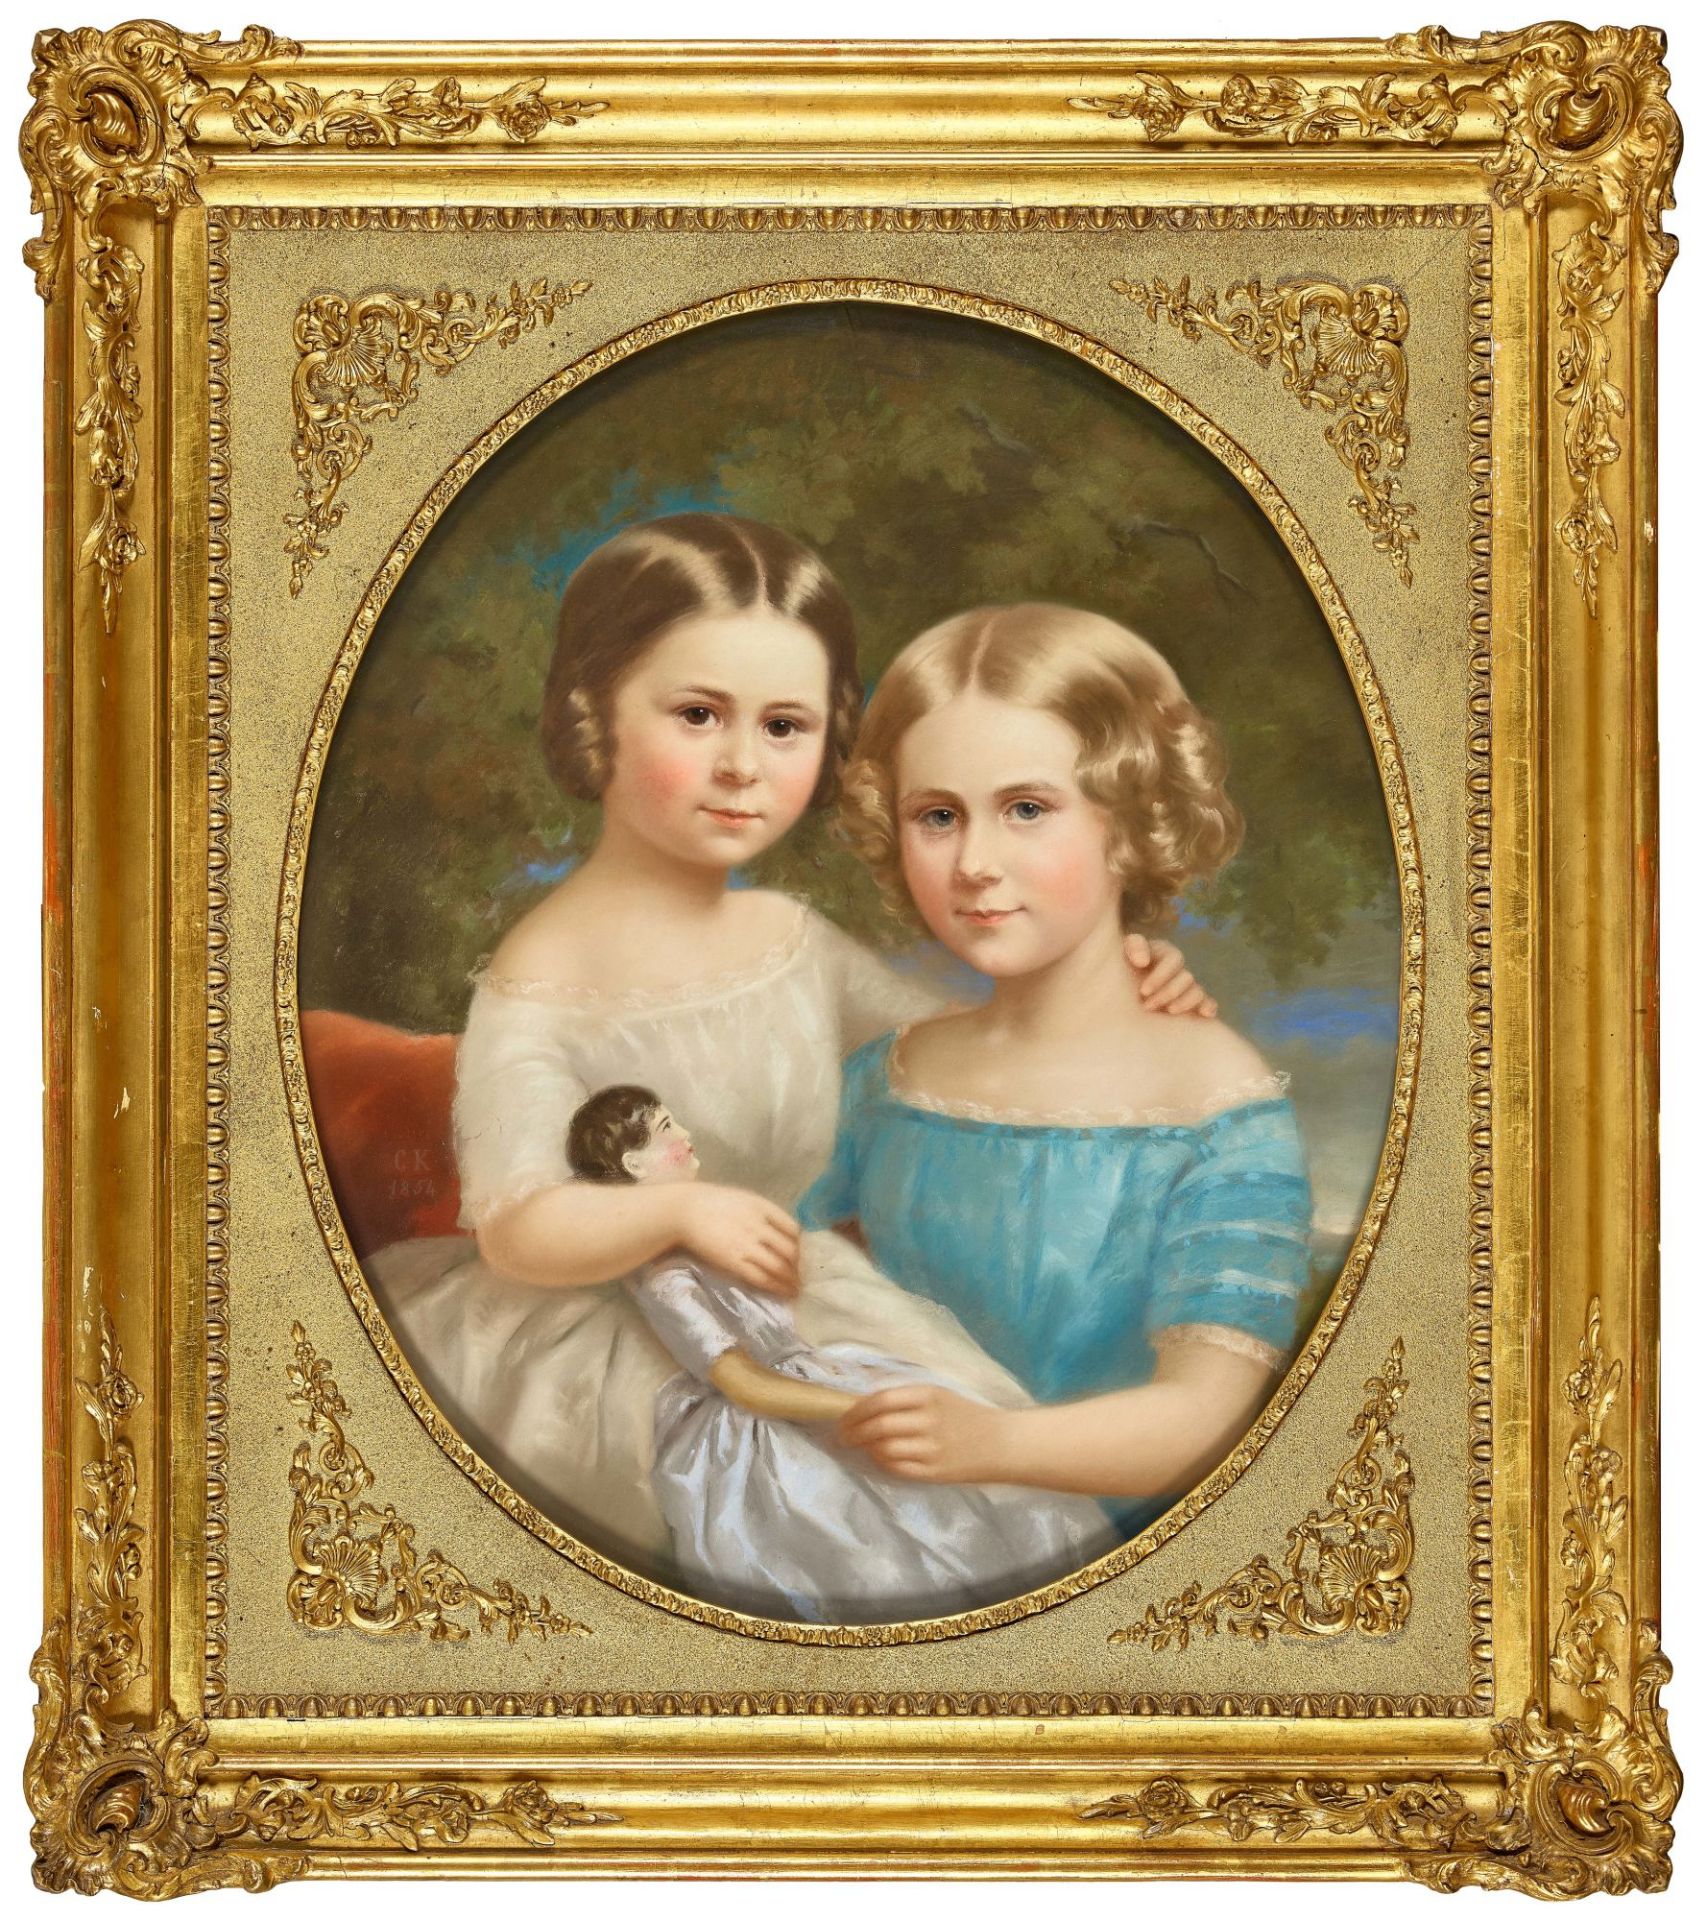 FRANKREICH, 19. JH.: Bildnis eines Schwesternpaares mit Puppe. - Bild 2 aus 3